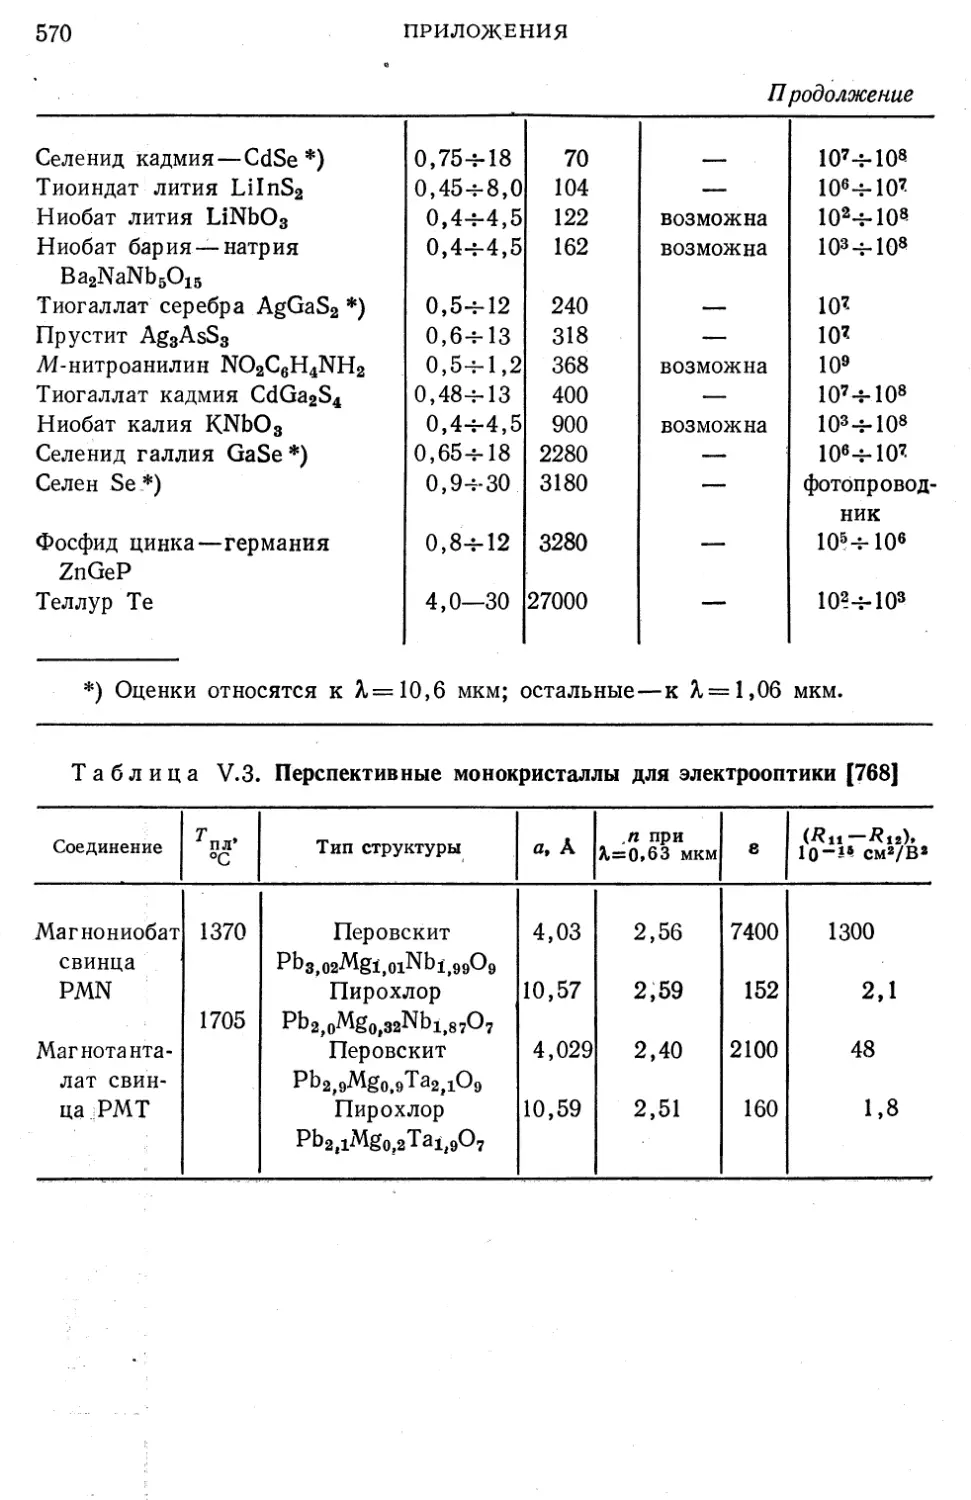 V.3. Перспективные монокристаллы для электрооптики